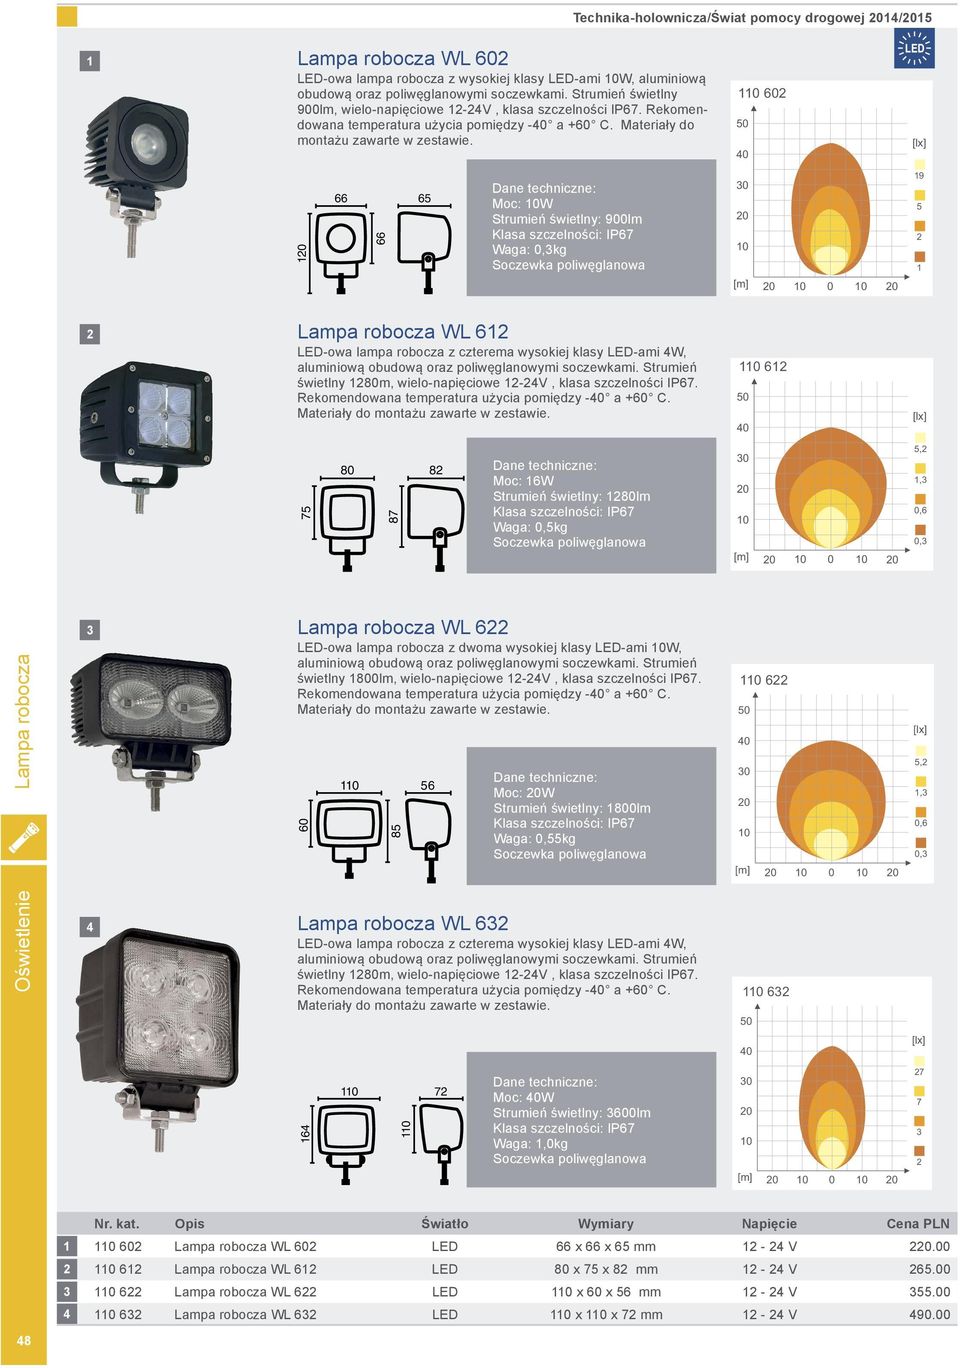 0 0 0 0 Moc: W Strumień świetlny: 900lm Klasa szczelności: IP Waga: 0,kg 0 0 9 [m] 0 0 0 Lampa robocza WL LED-owa lampa robocza z czterema wysokiej klasy LED-ami W, aluminiową obudową oraz